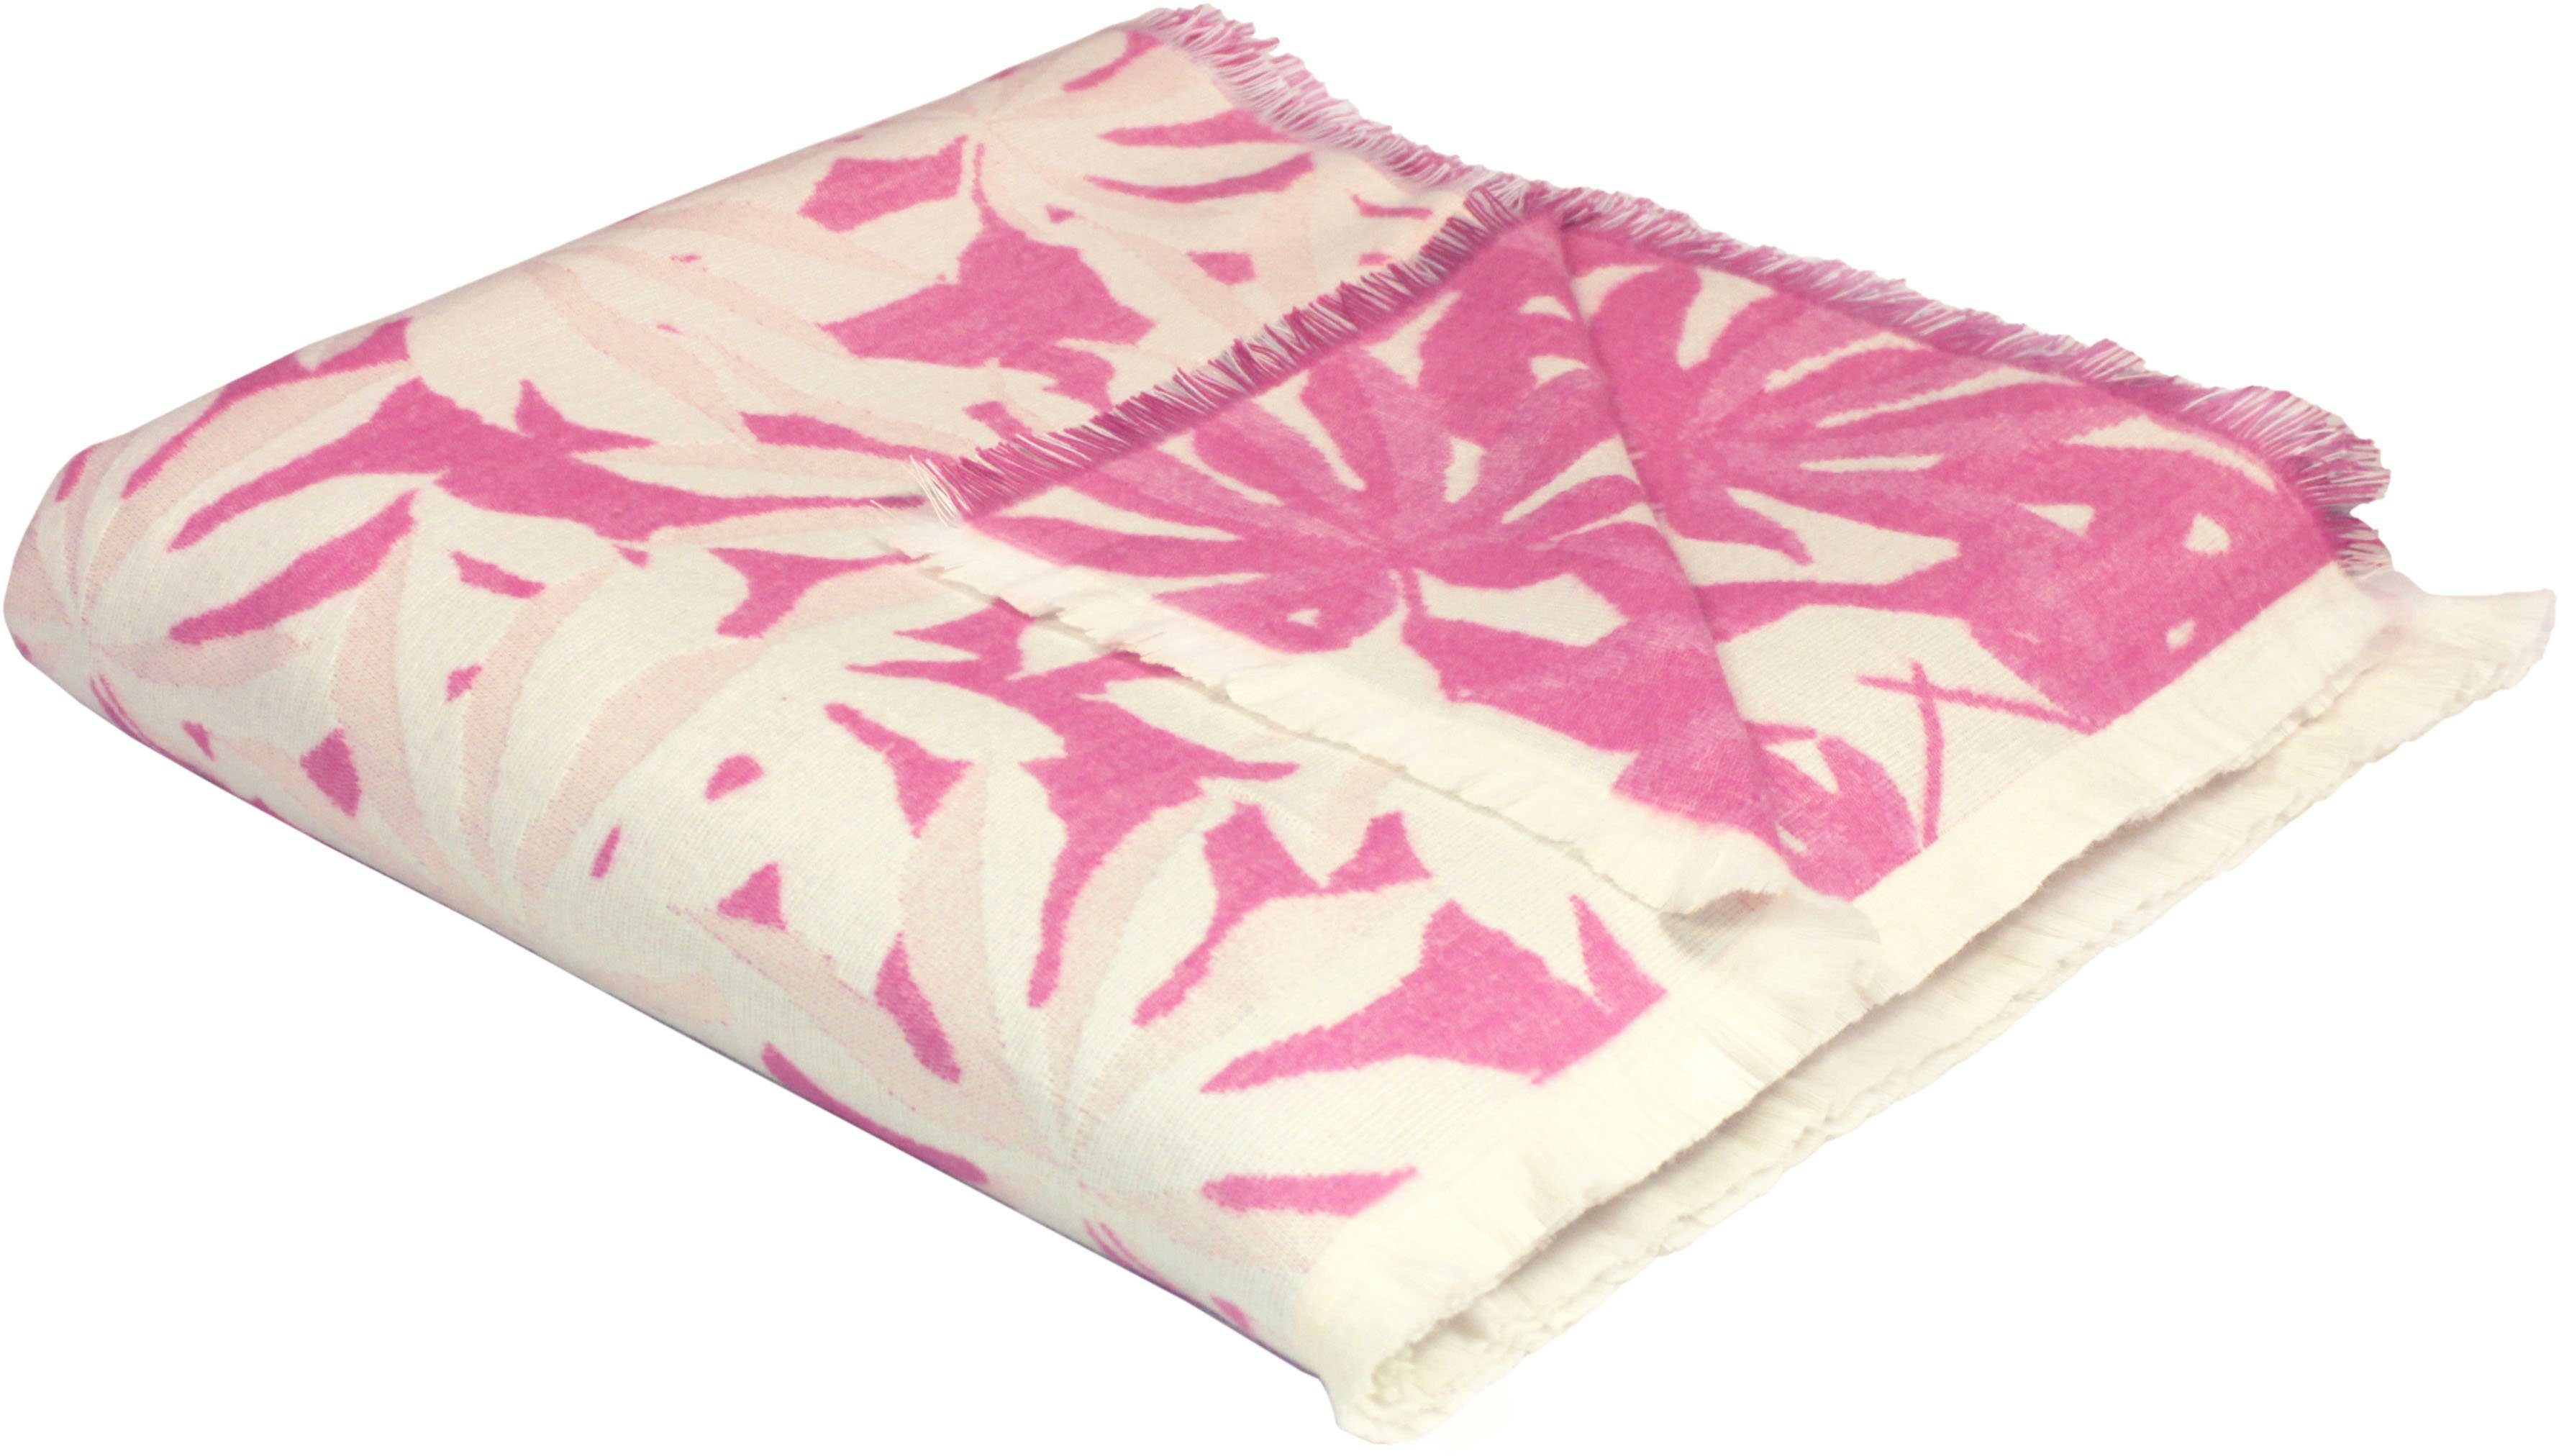 Wohndecke Jungle, - GOTS pink zertifiziert Adam, nachhaltig Bio-Baumwolle, Kuscheldecke aus